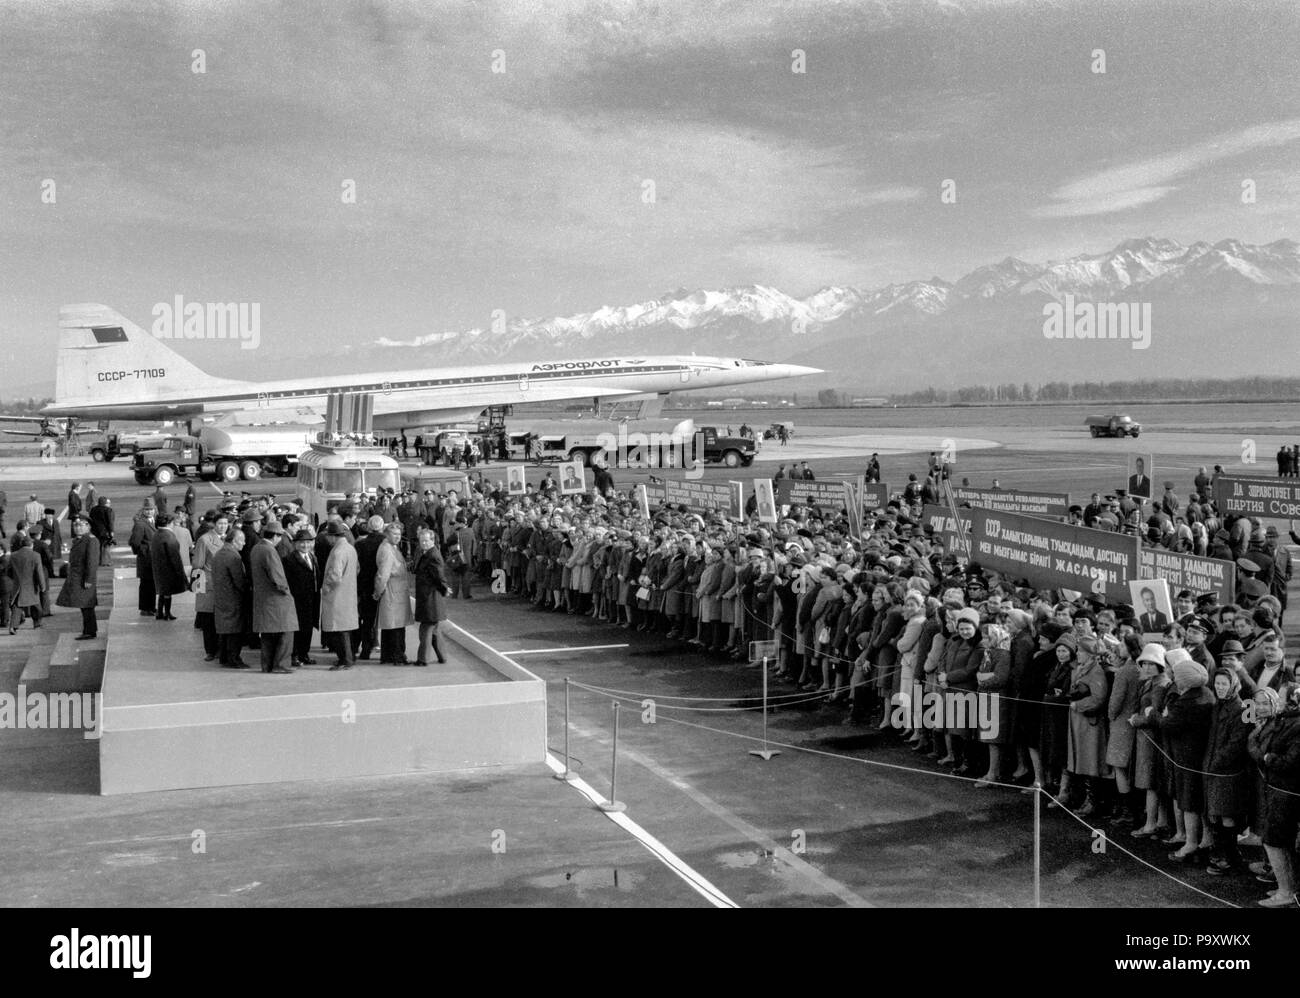 Die Tupolew Tu-144 Supersonic jet Flugzeug der Aeroflot sowjetischen Airlines dargestellt, während eine willkommene kommunistischen Konferenz zu den ersten Passagier fl gewidmet Stockfoto